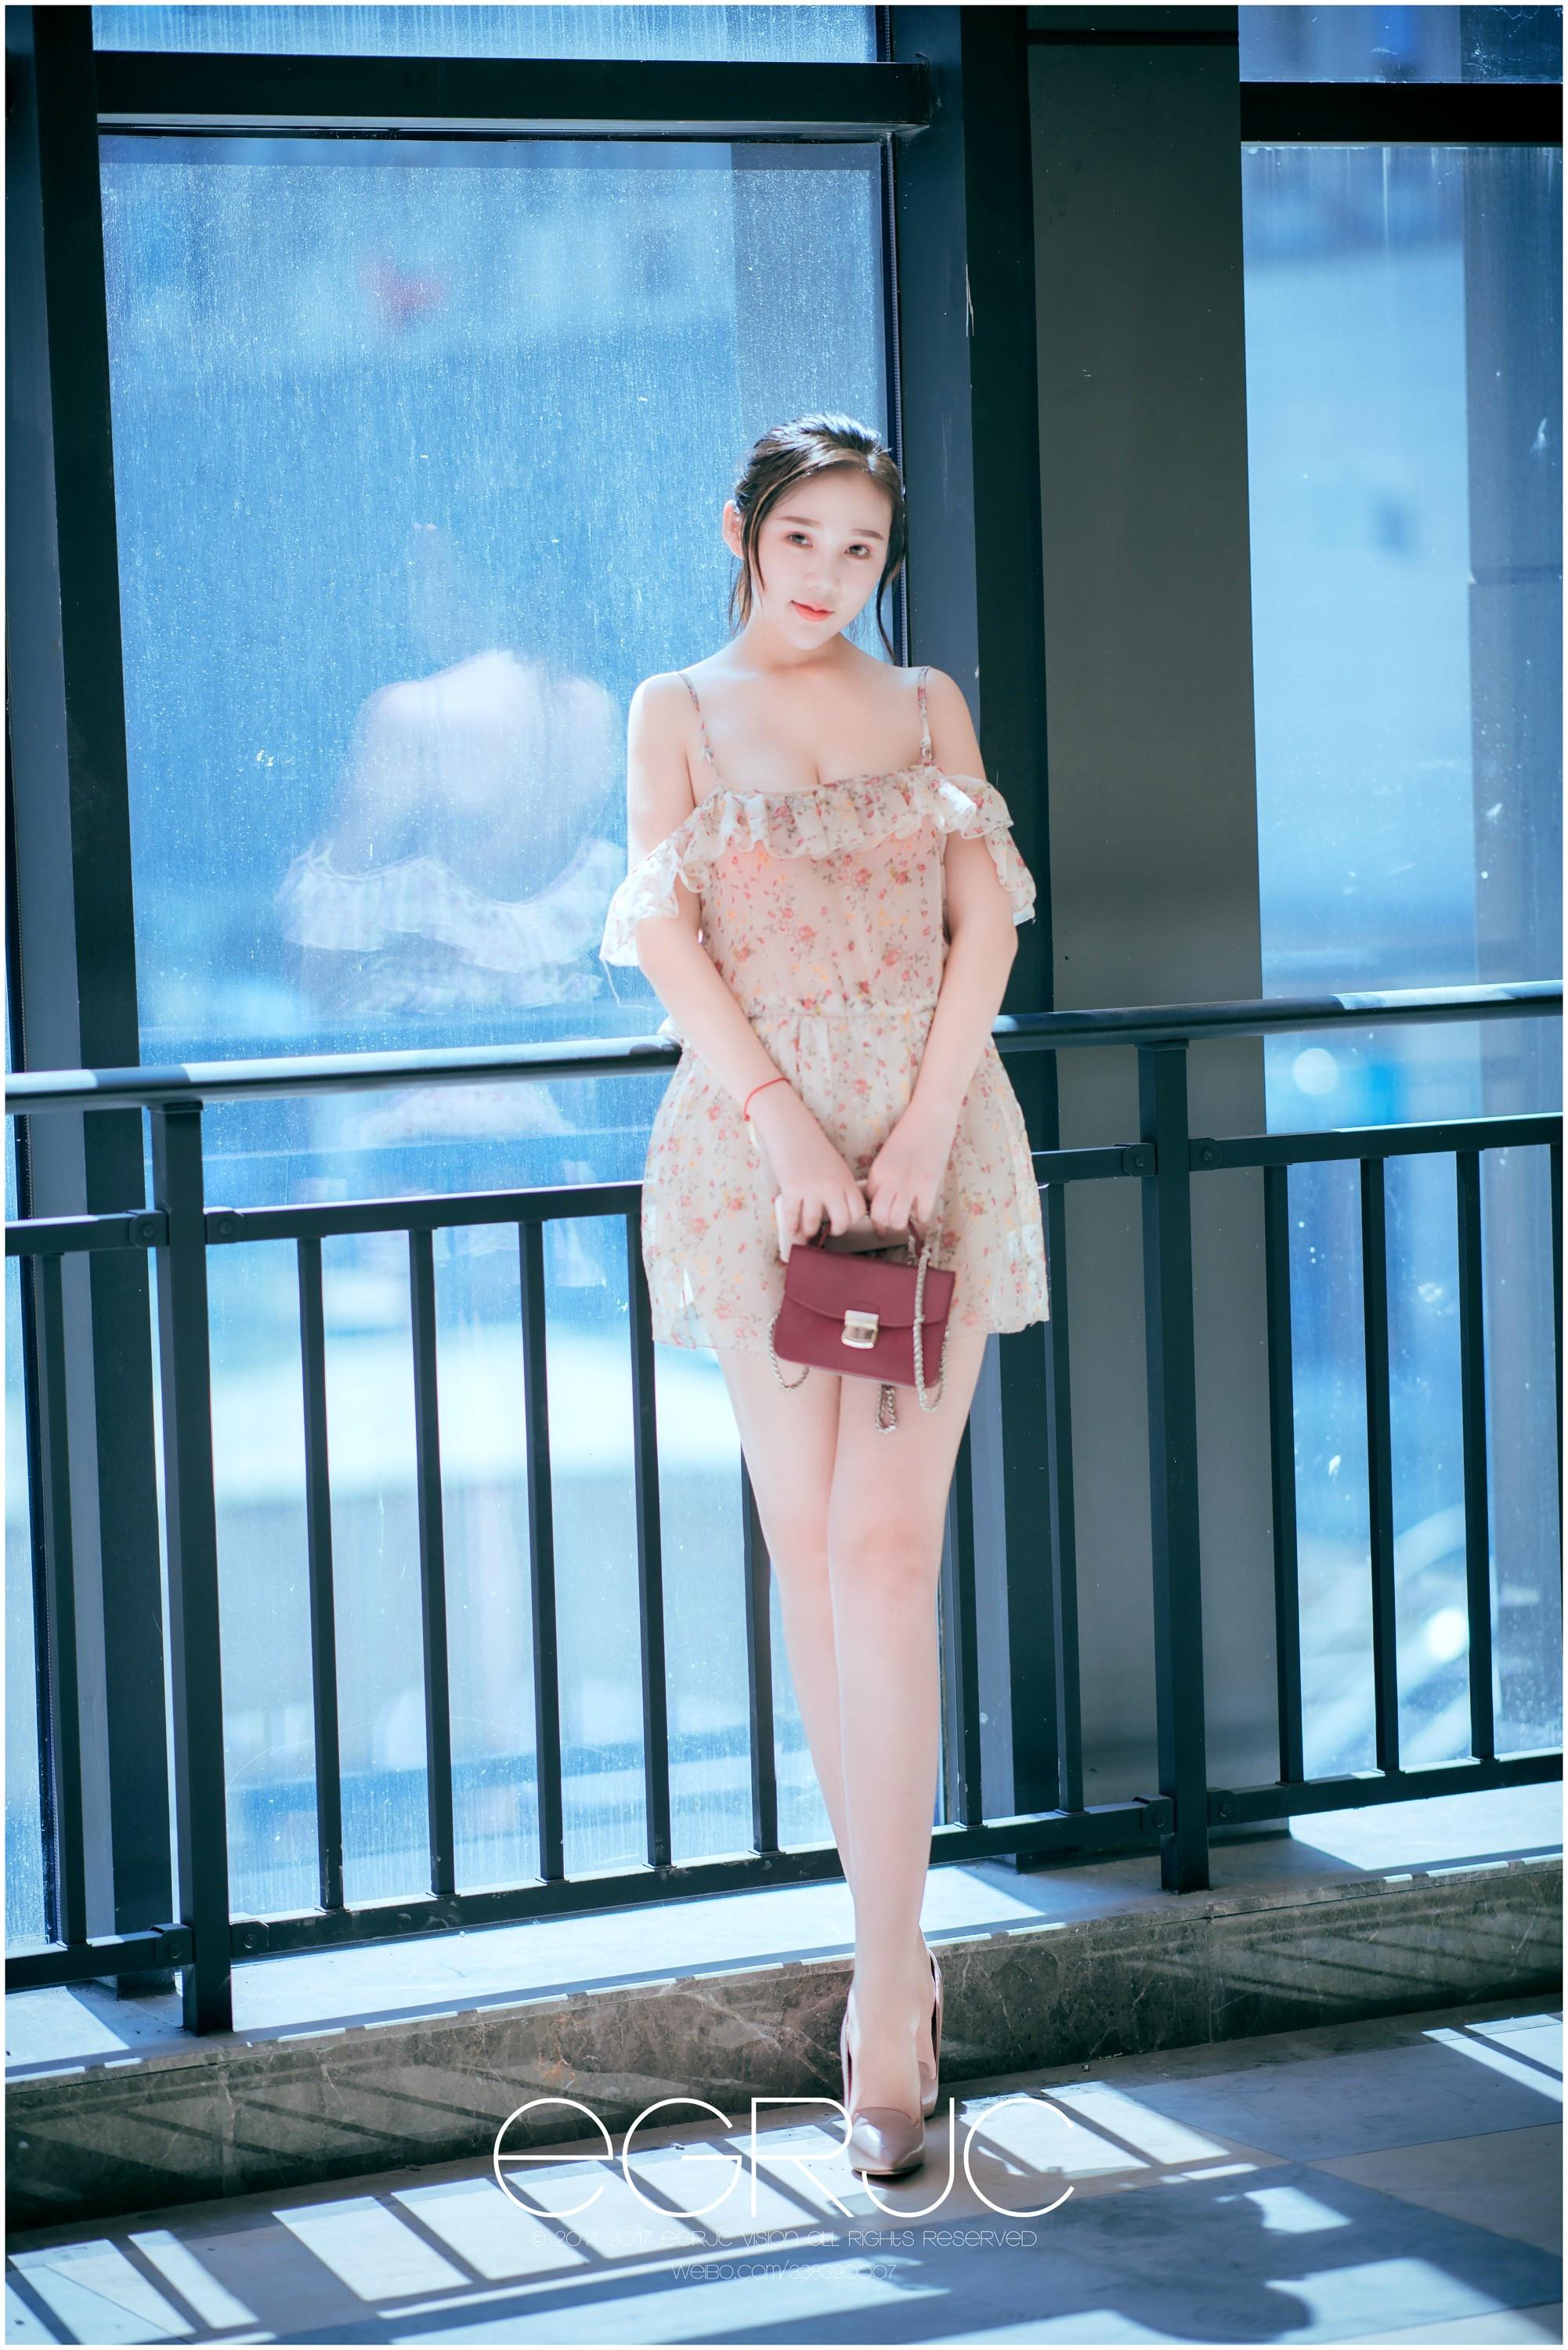 微博女神范 一起撕妹纸 雪尔0821 碎花连身裙与性感美腿街拍写真,